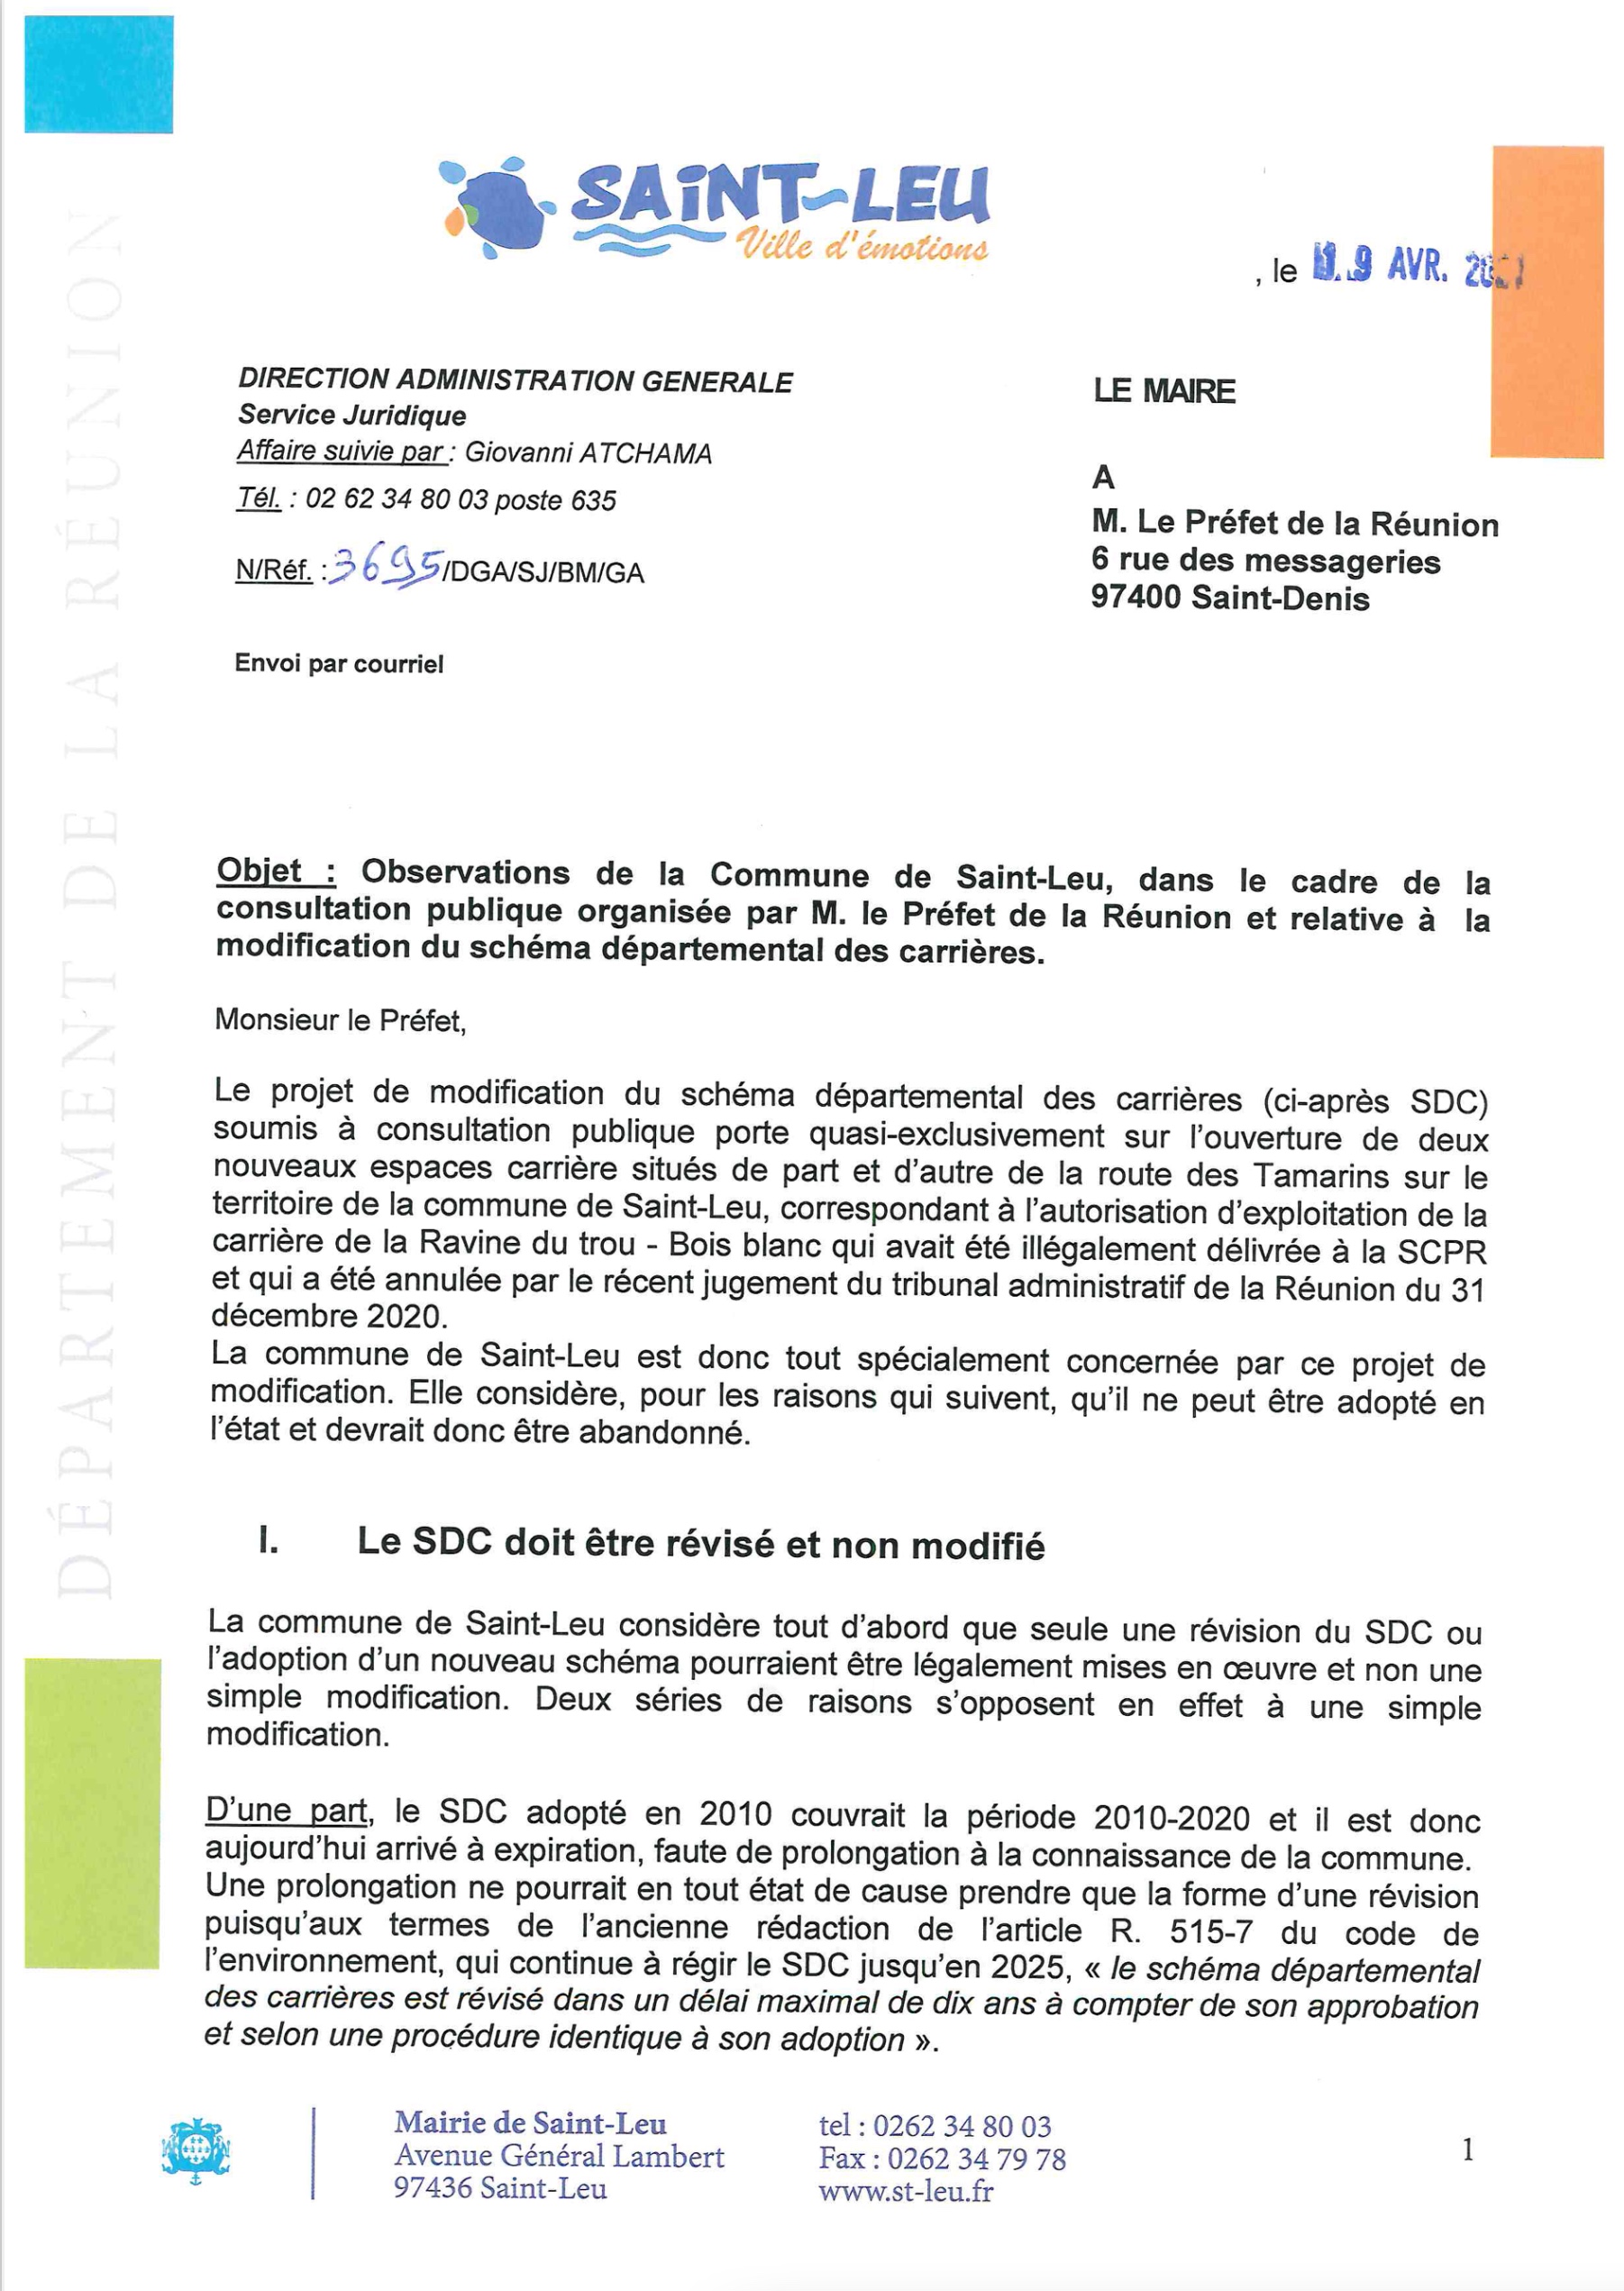 St-Leu confirme son opposition à la carrière de Bois Blanc